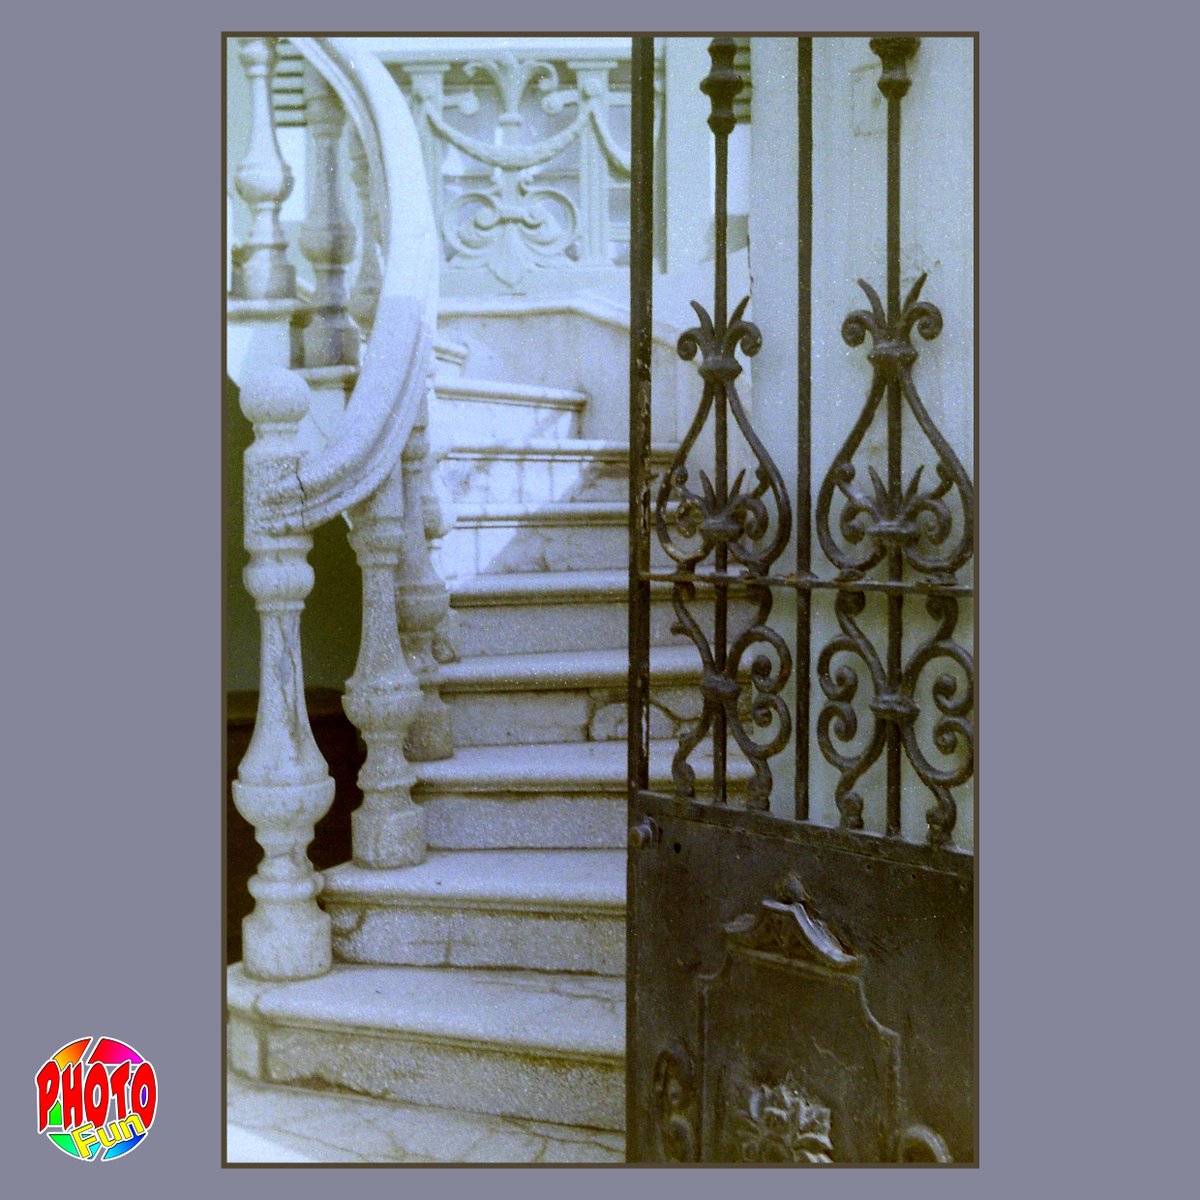 Voigtlander Vitoret 1963 Kodak Color 200 Las Palmas The stairs behind the gate #voigtlander #vitoret #1963 #kodak #kodakcolor200 #laspalmas #grancanaria #stairs #gate #photography #135film #photofun